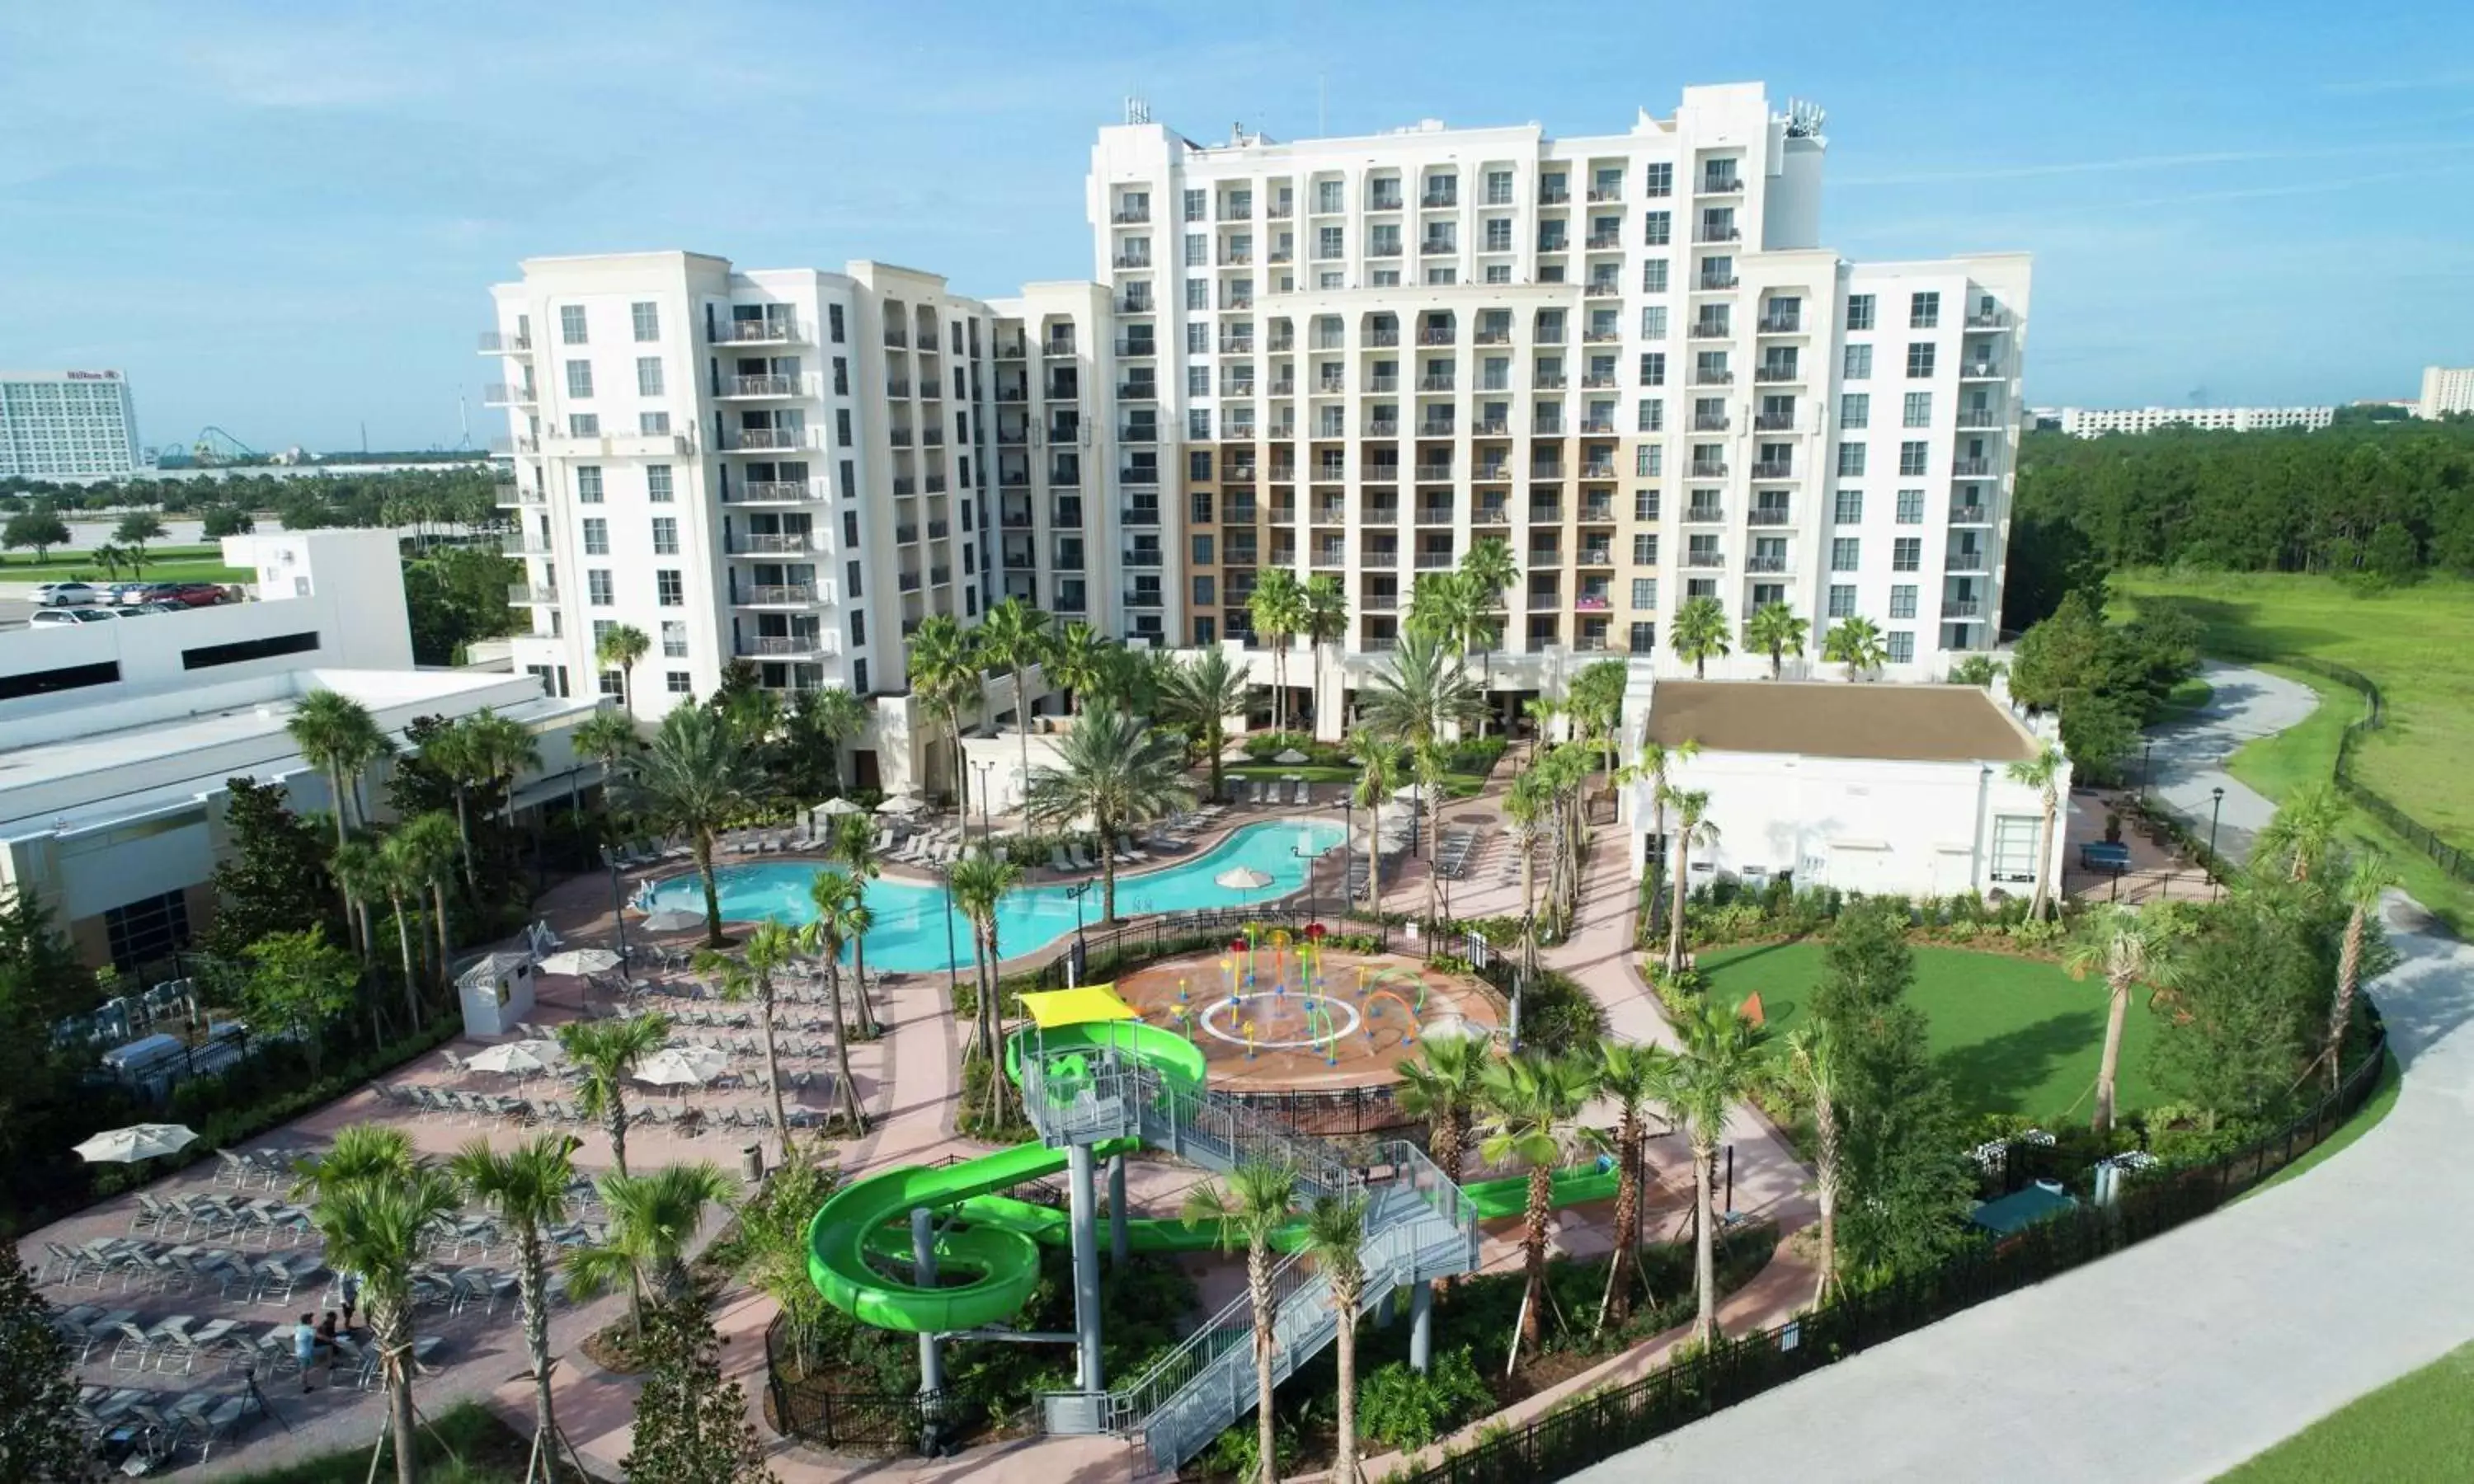 Property building, Pool View in Hilton Grand Vacations Club Las Palmeras Orlando